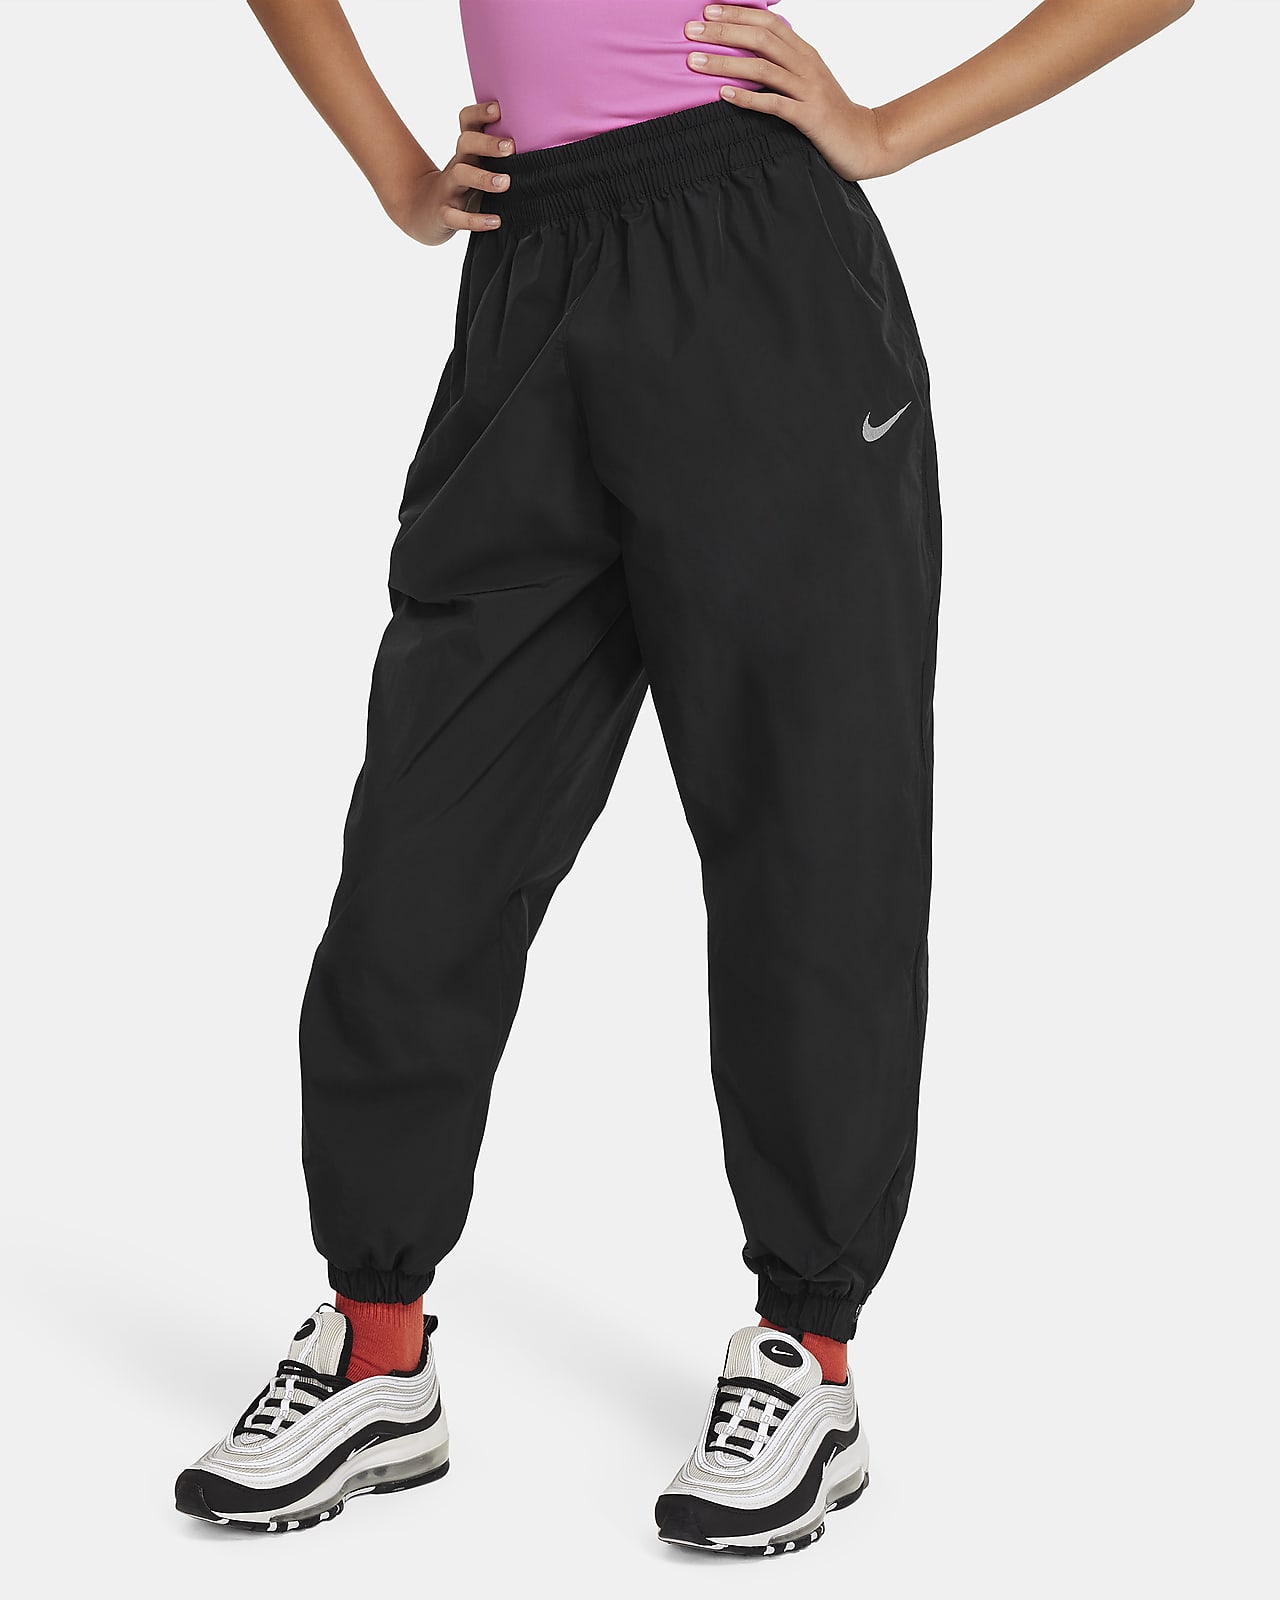 Nike Sportswear Older Kids' (Girls') Woven Trousers